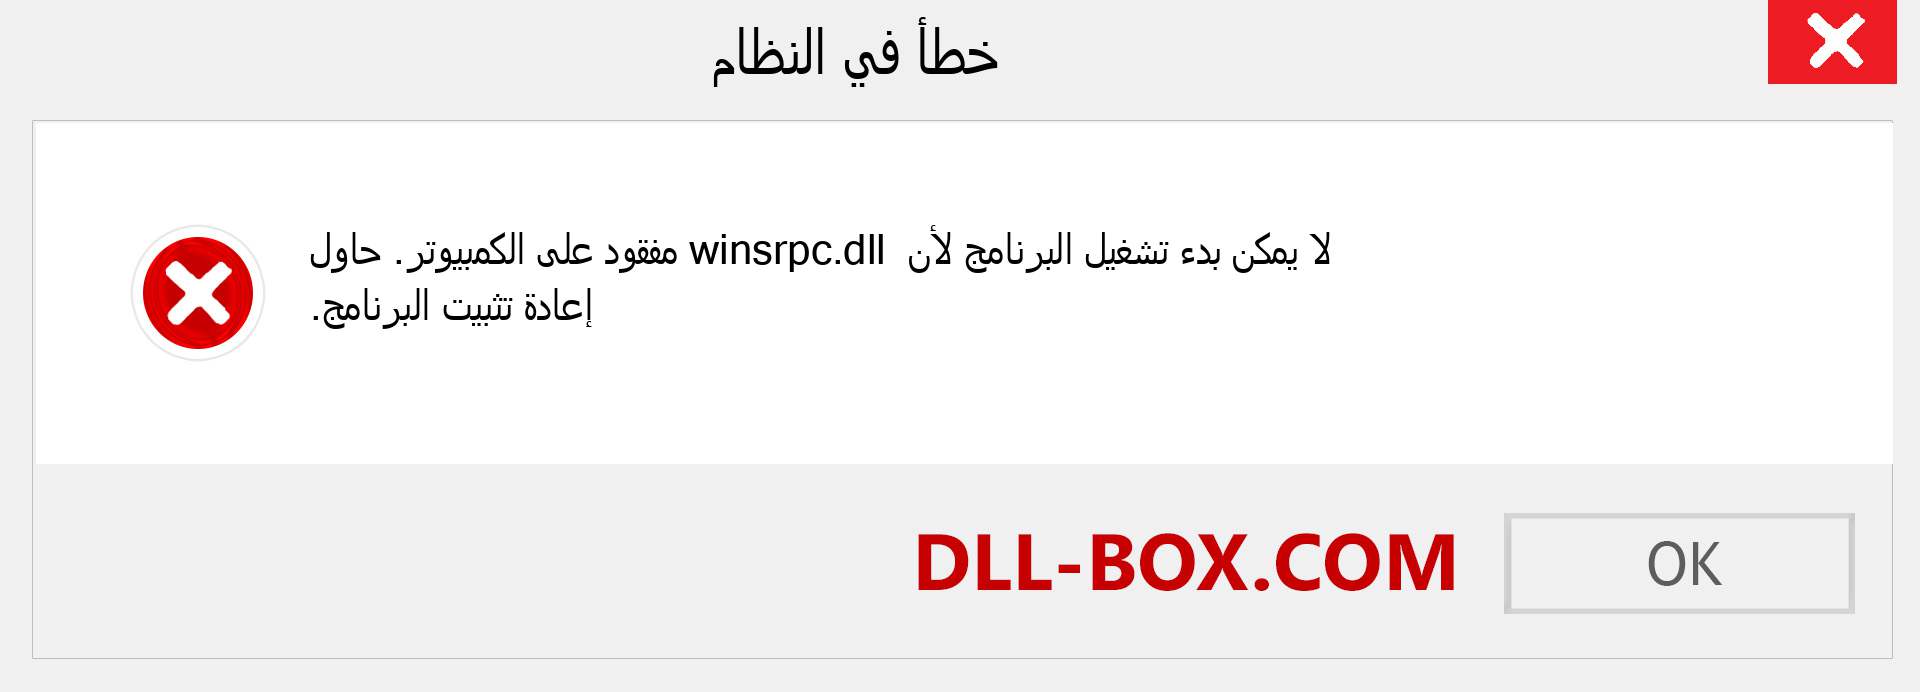 ملف winsrpc.dll مفقود ؟. التنزيل لنظام التشغيل Windows 7 و 8 و 10 - إصلاح خطأ winsrpc dll المفقود على Windows والصور والصور